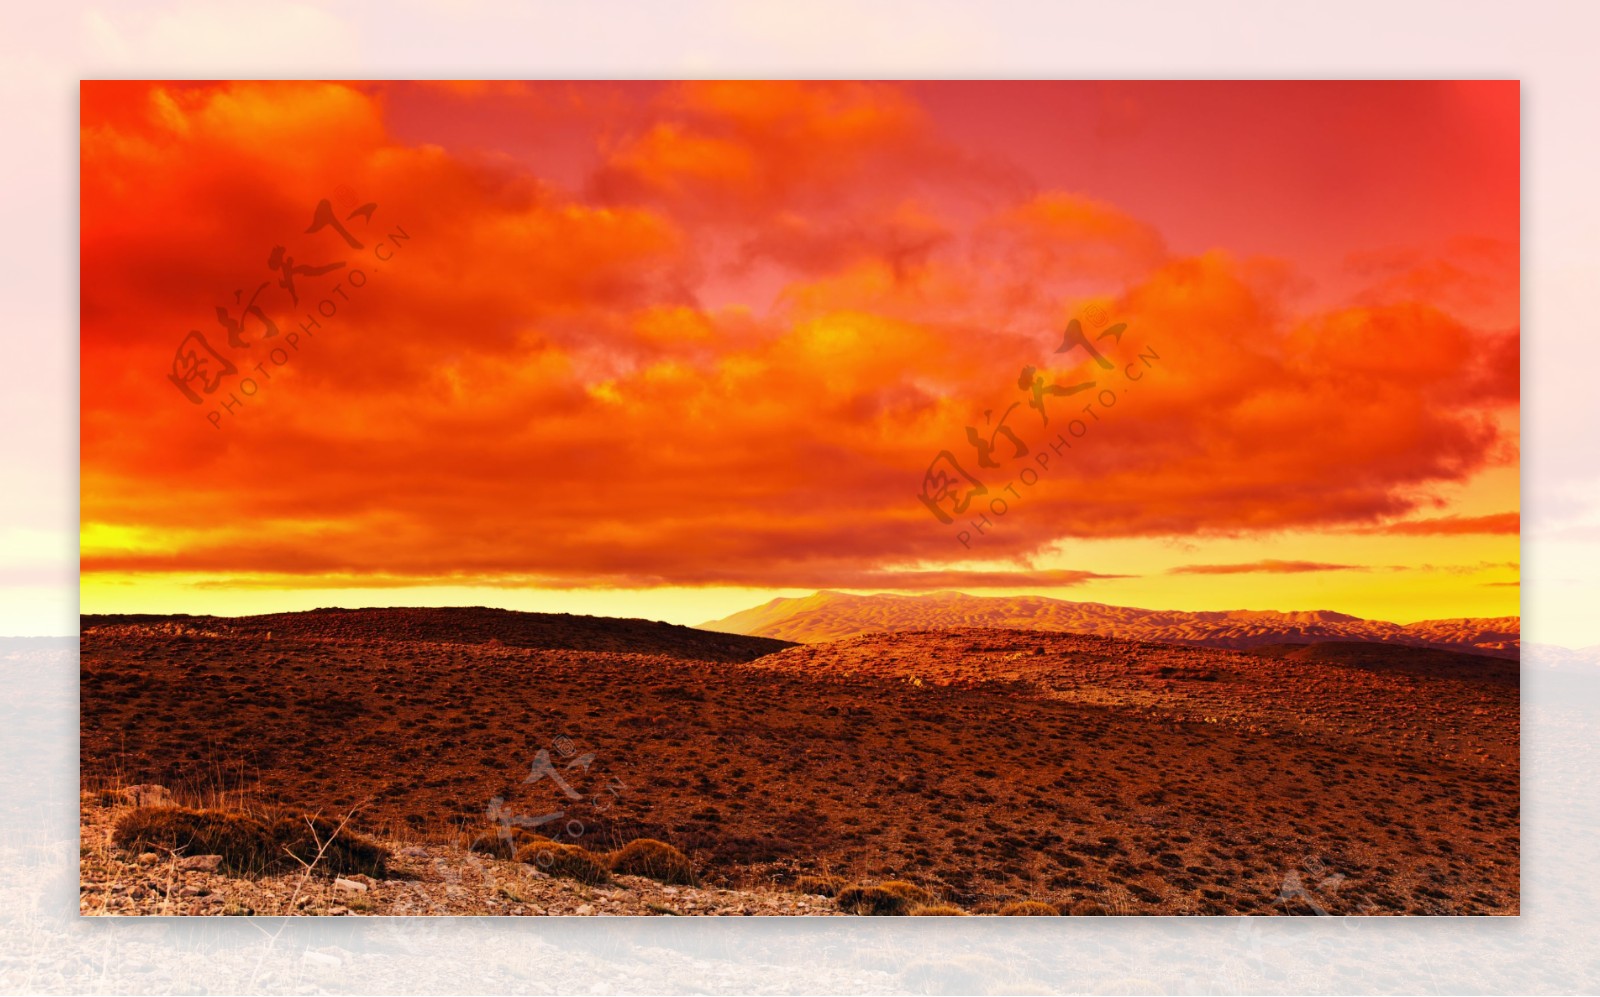 黄昏沙漠风景图片